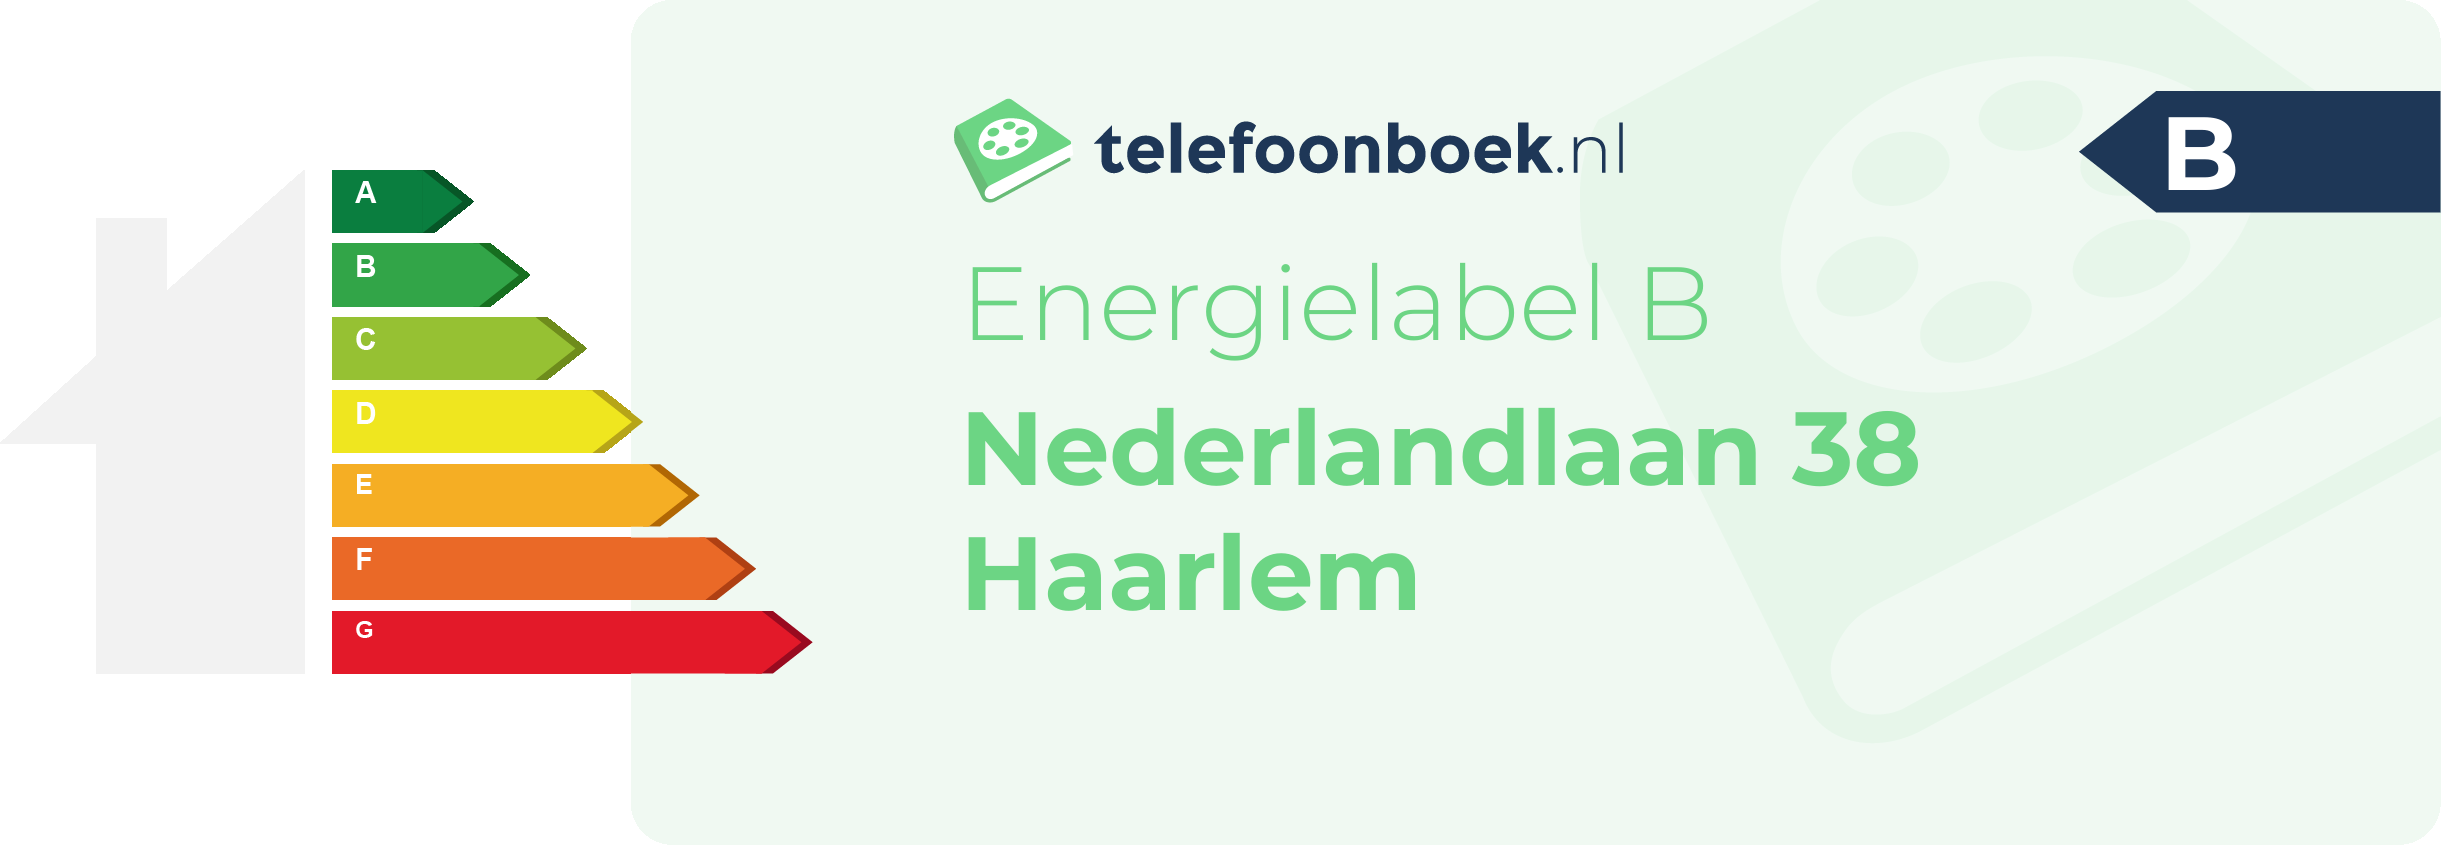 Energielabel Nederlandlaan 38 Haarlem